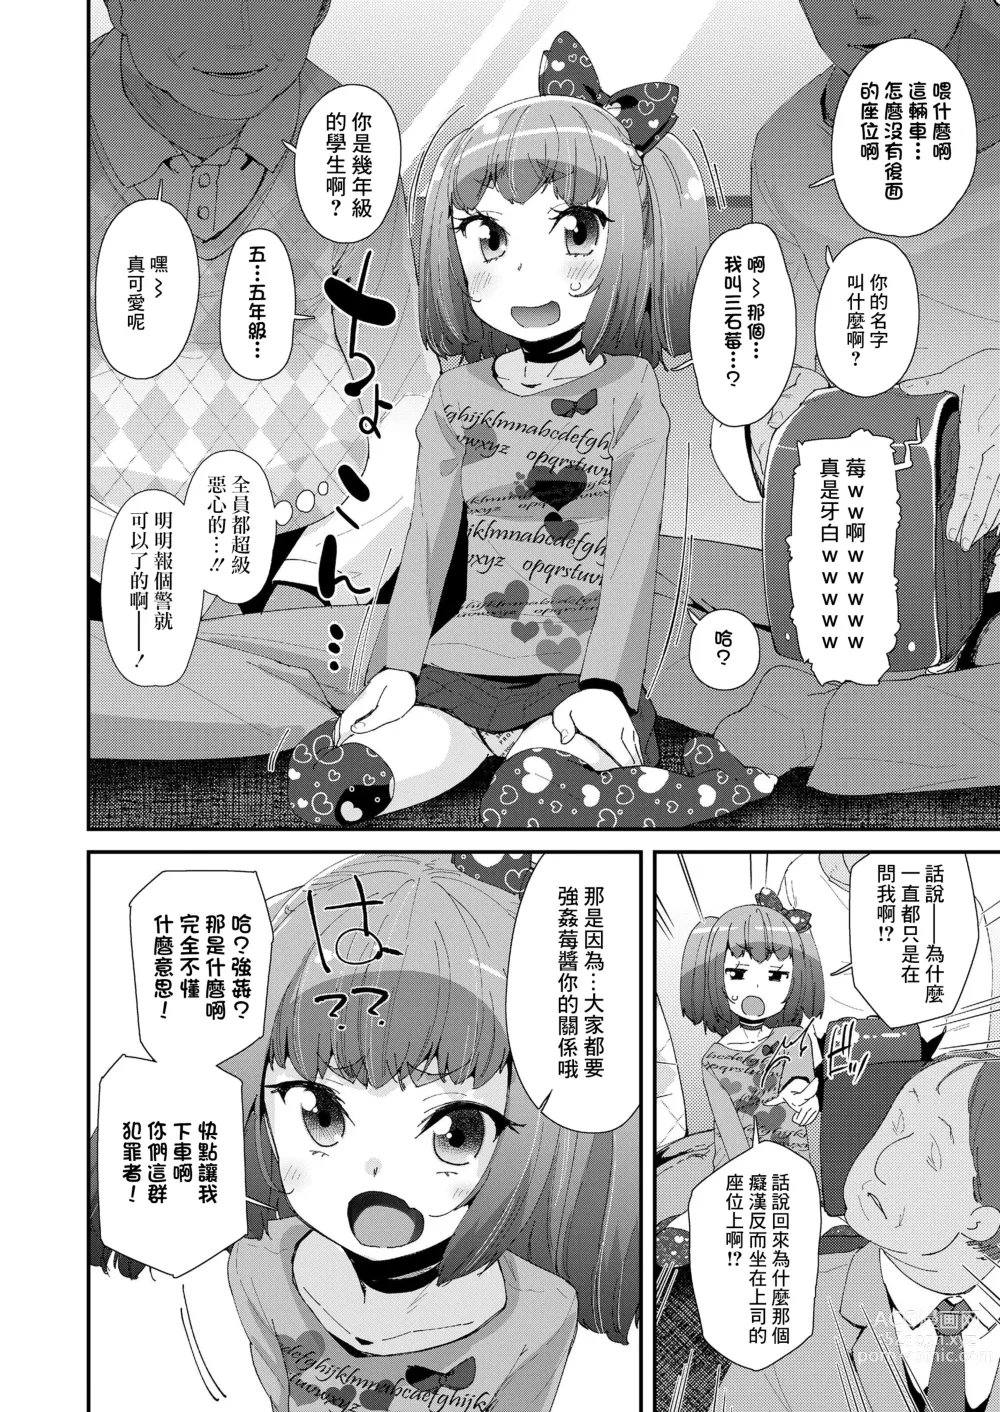 Page 4 of manga Iiko ni Naare